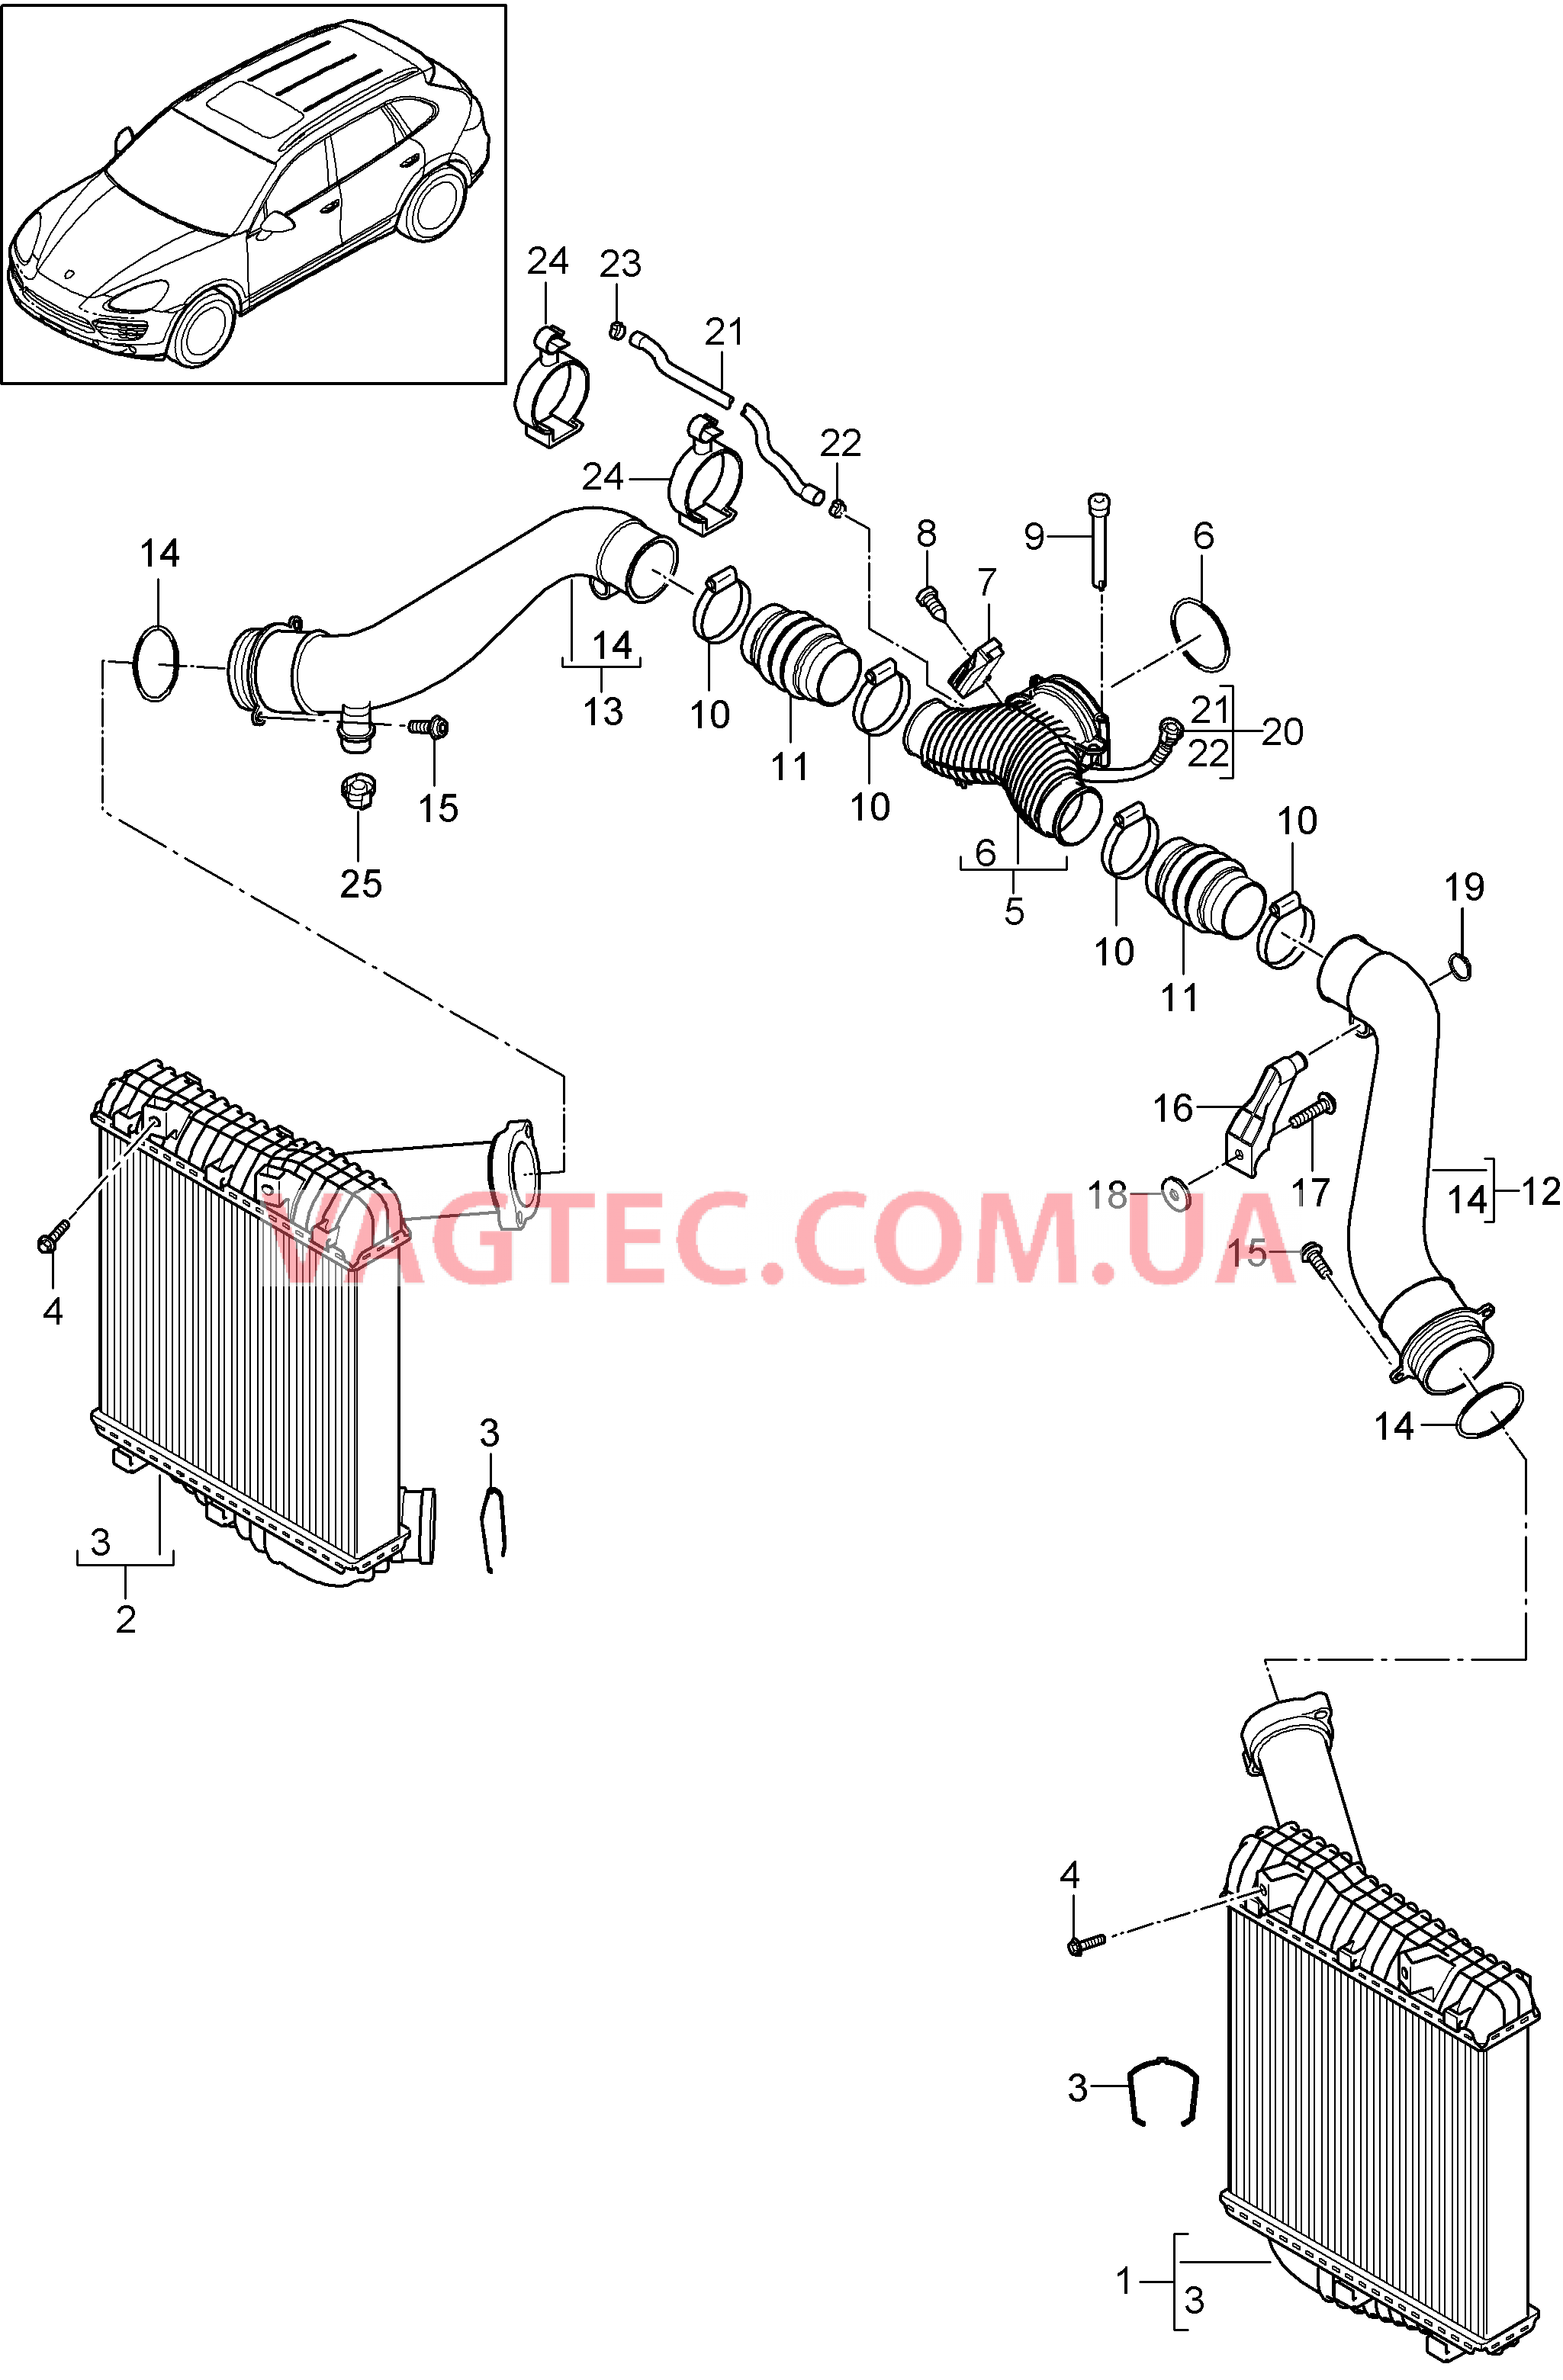 107-070 Интеркулер, Напорная трубка
						
						IDT1/DT5/D58 для PORSCHE Cayenne 2011-2018USA